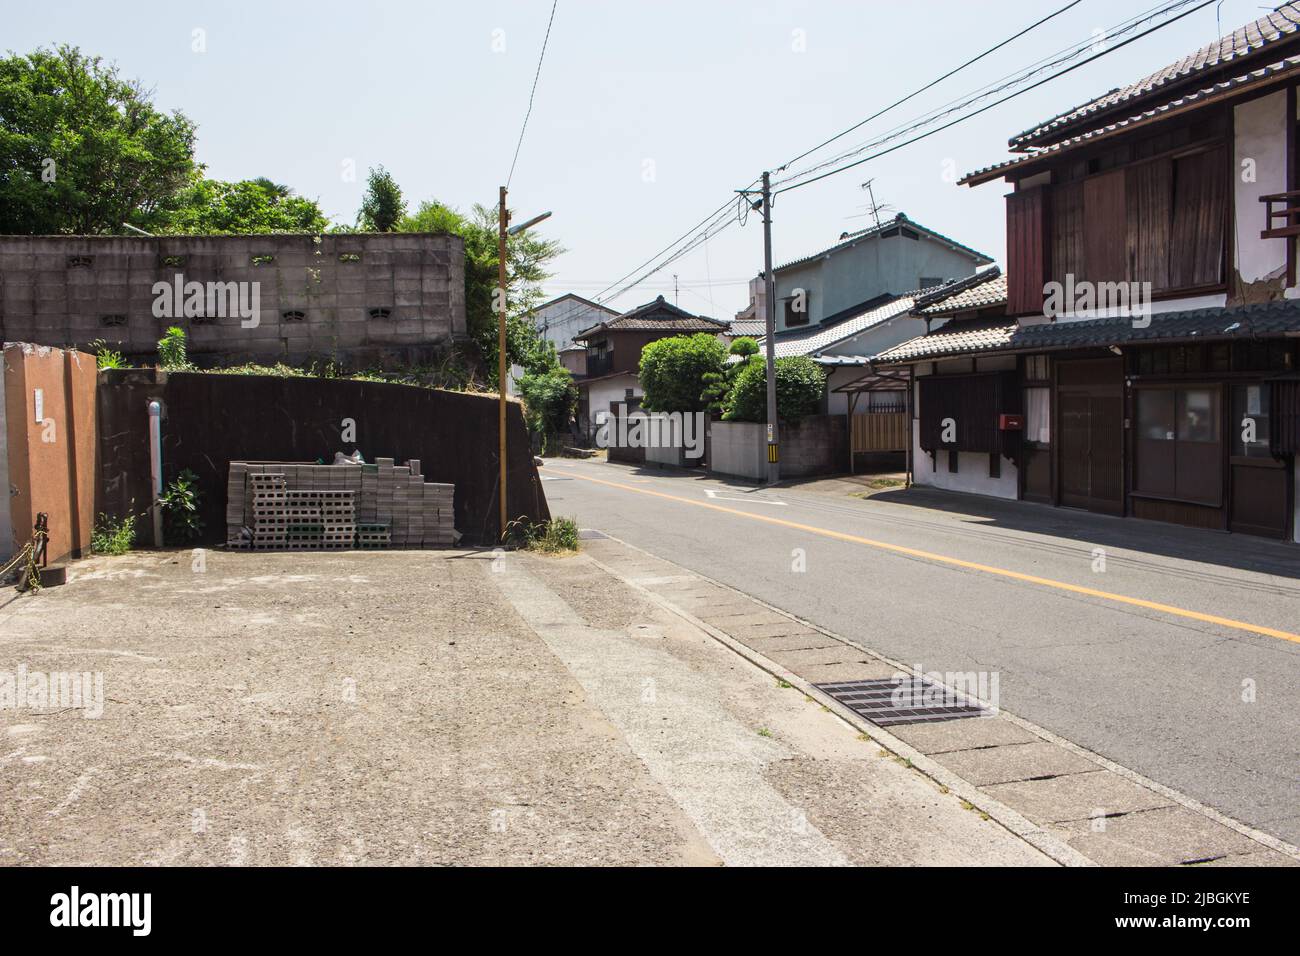 Das Wohnviertel außerhalb des Stadtzentrums (ländliche Gegend), Japan. Stockfoto